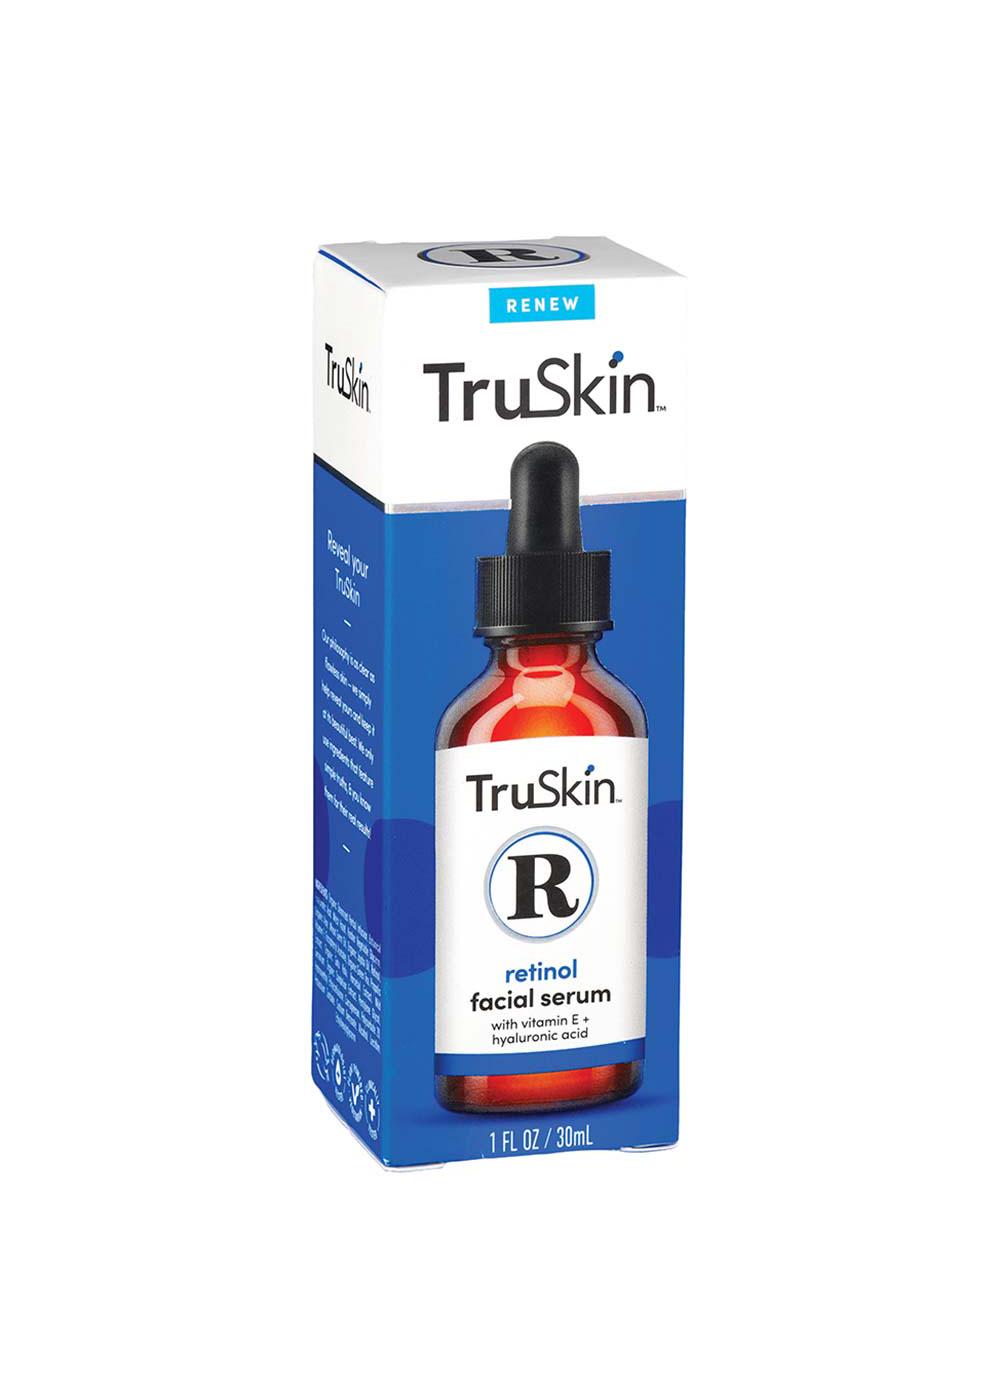 TruSkin Retinol Facial Serum; image 1 of 4